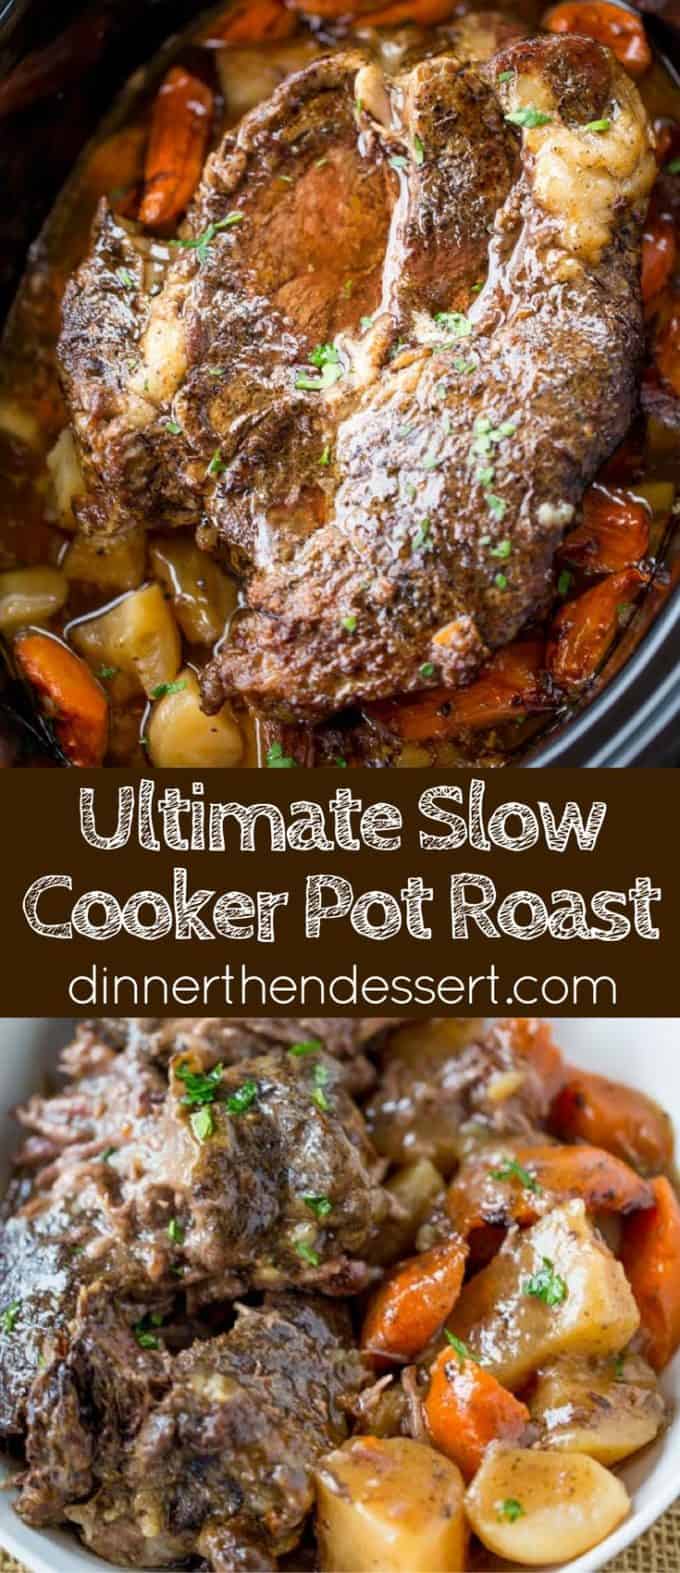 Classic Pot Roast - Dinner, then Dessert